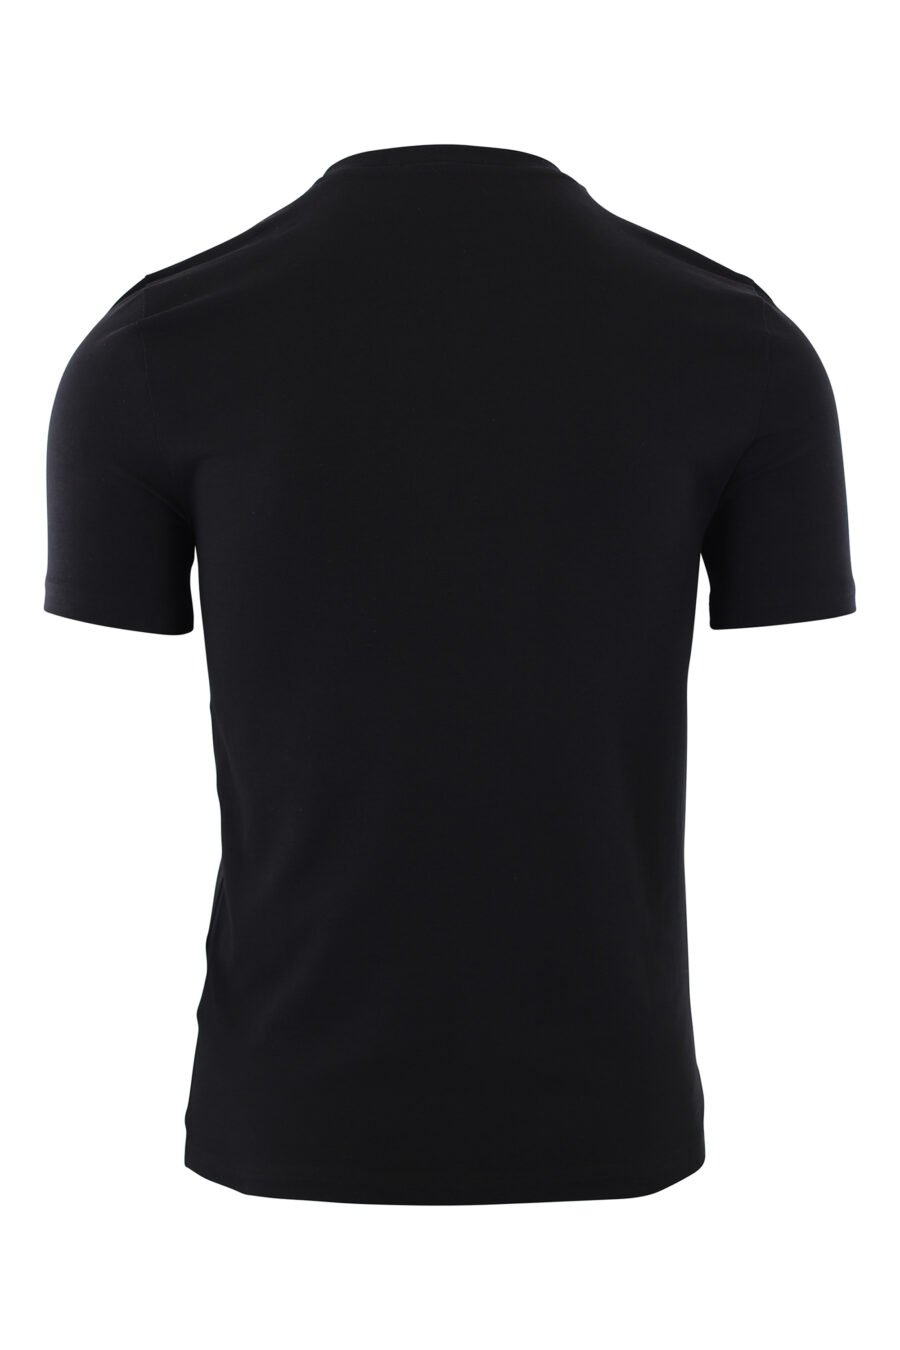 Camiseta negra con maxi logo doble "smiley" - IMG 2426